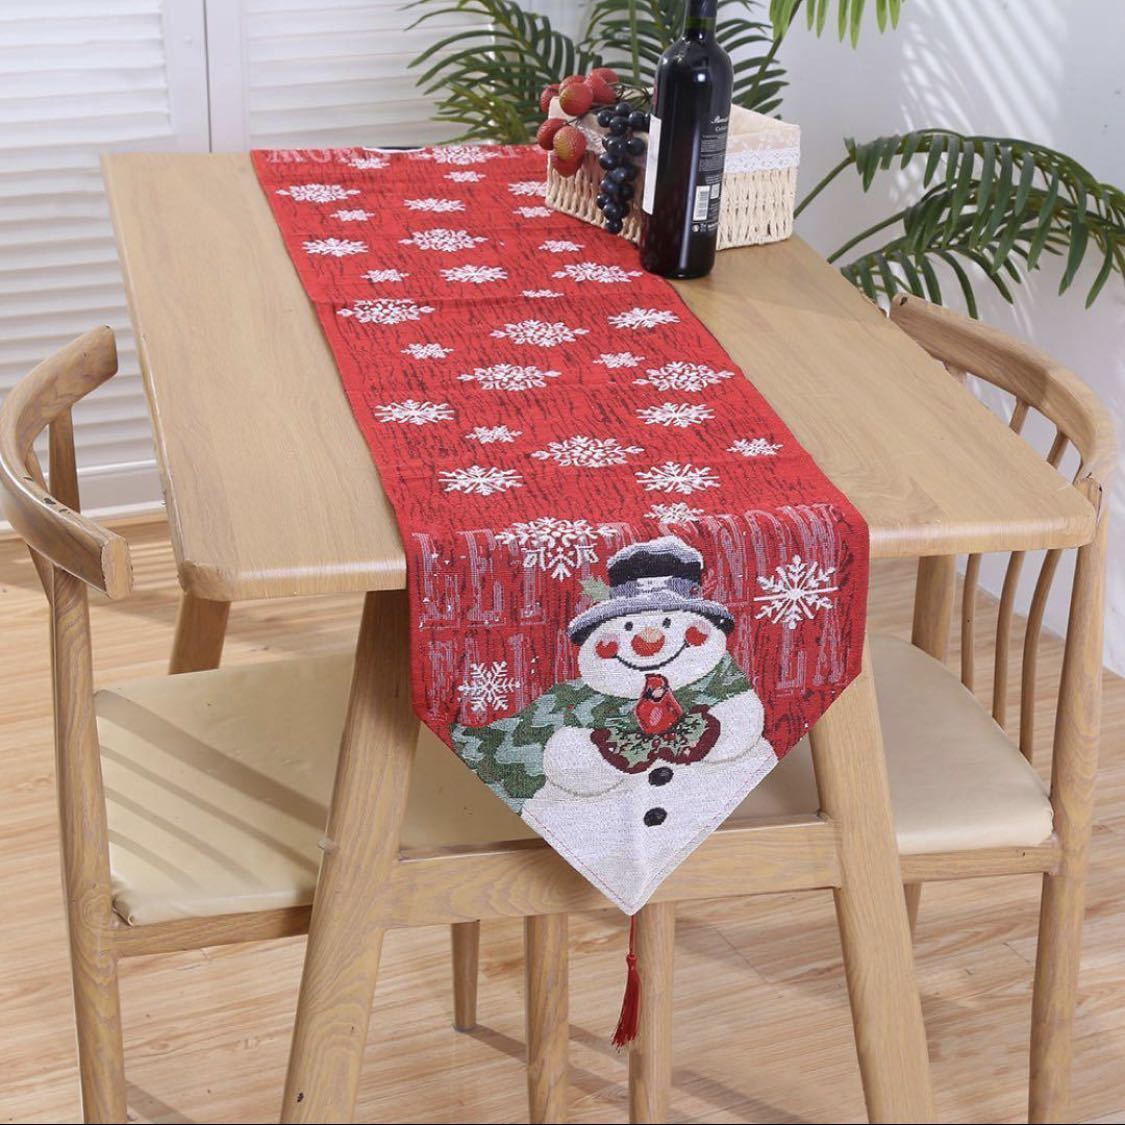 【送料無料】テーブルランナー 赤 クリスマス 雪だるま Xmas 北欧 SNS映 パーティー テーブルクロス 食卓カバー 海外輸入 ディナー サンタ